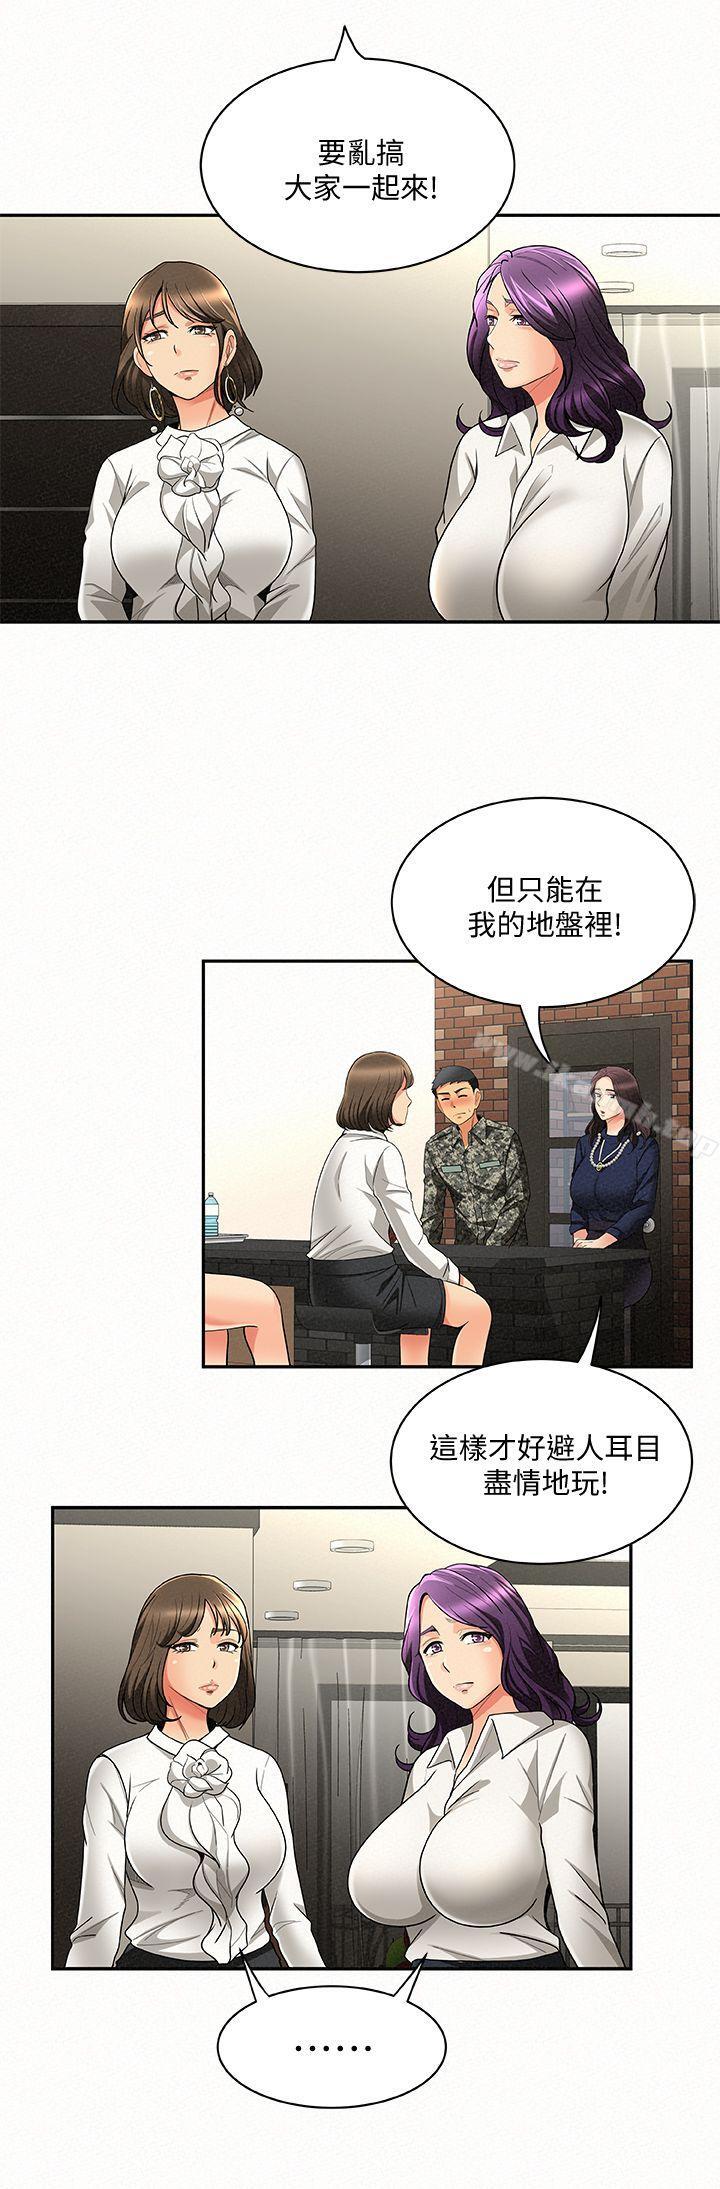 韩国漫画报告夫人韩漫_报告夫人-第3话-想不想嚐嚐其他有夫之妇?在线免费阅读-韩国漫画-第18张图片